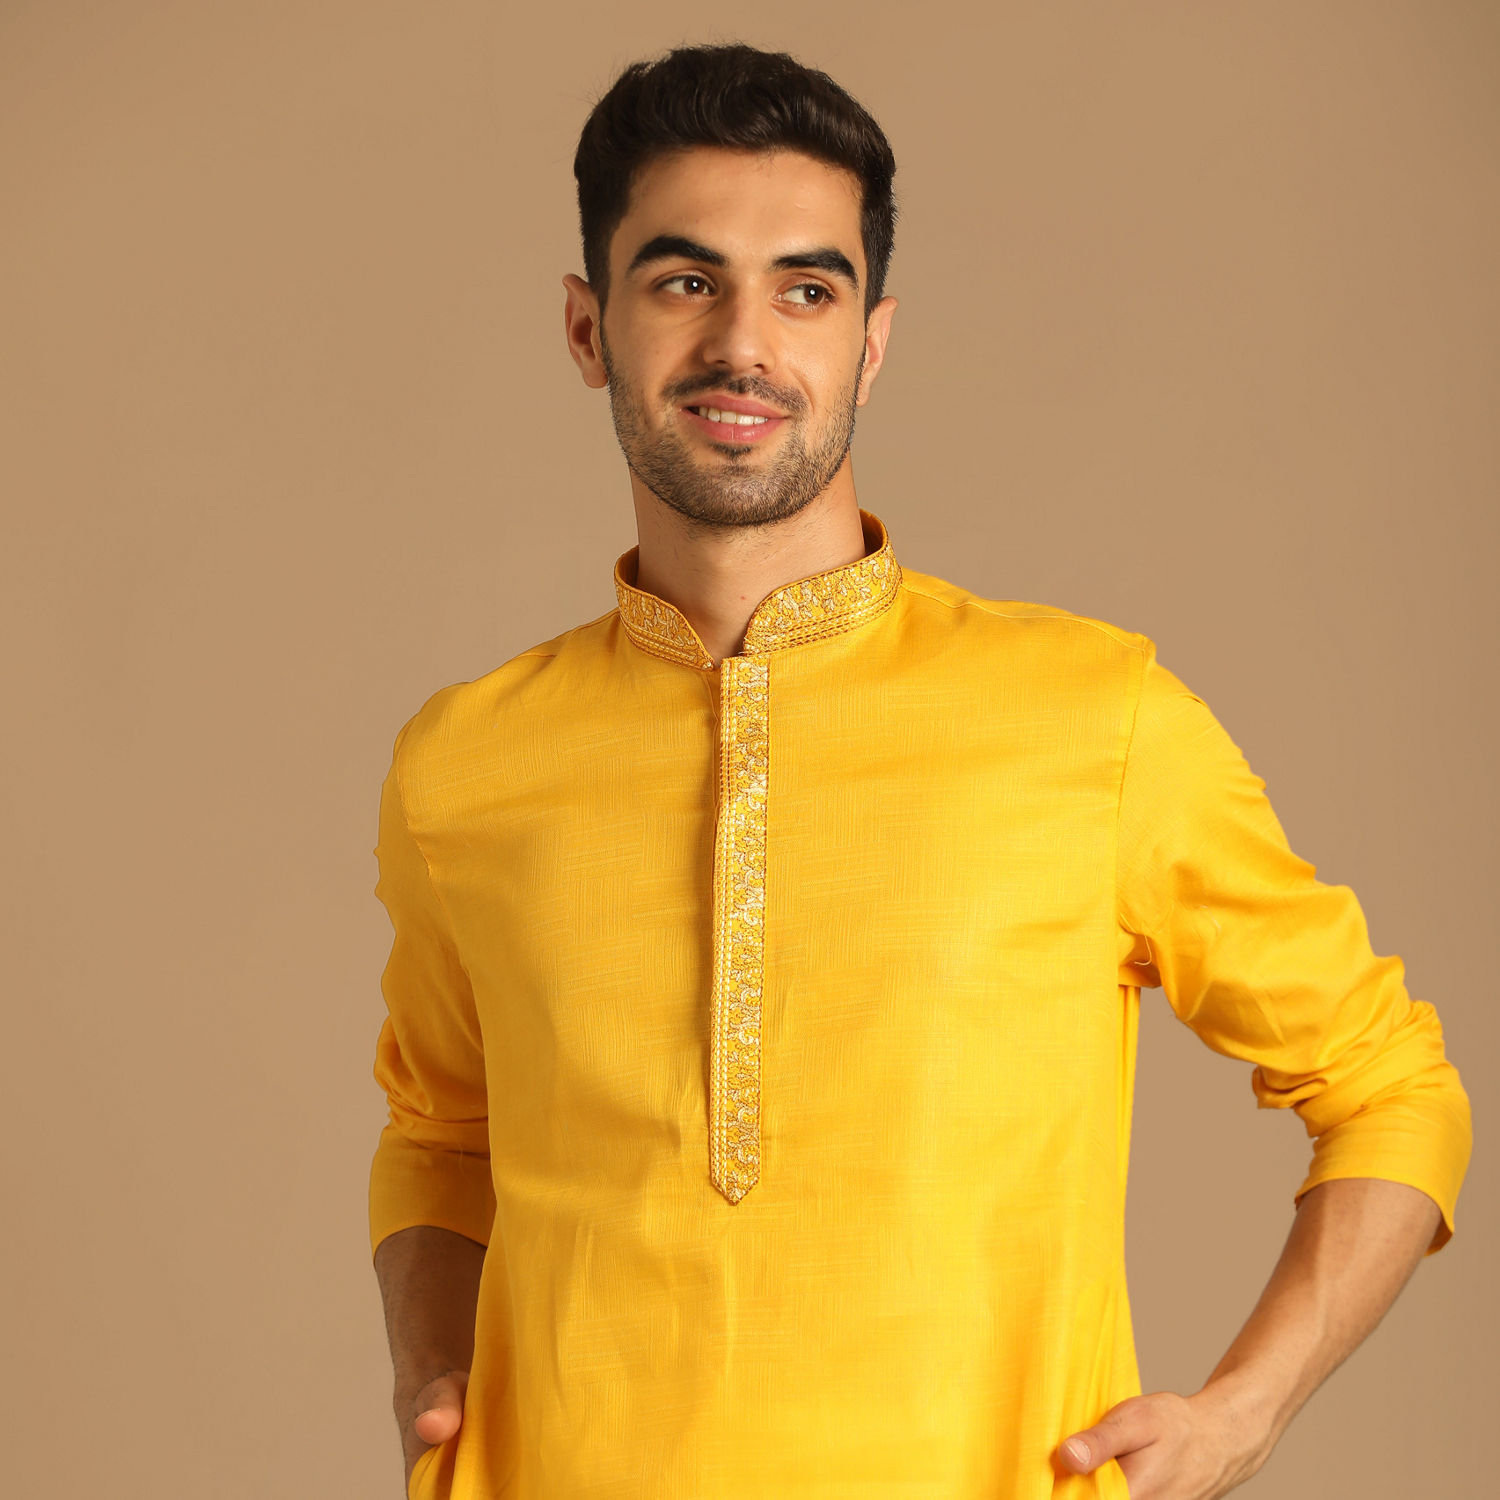 Buy Contemporary Yellow Kurta Pajama Online in India @Manyavar - Kurta ...